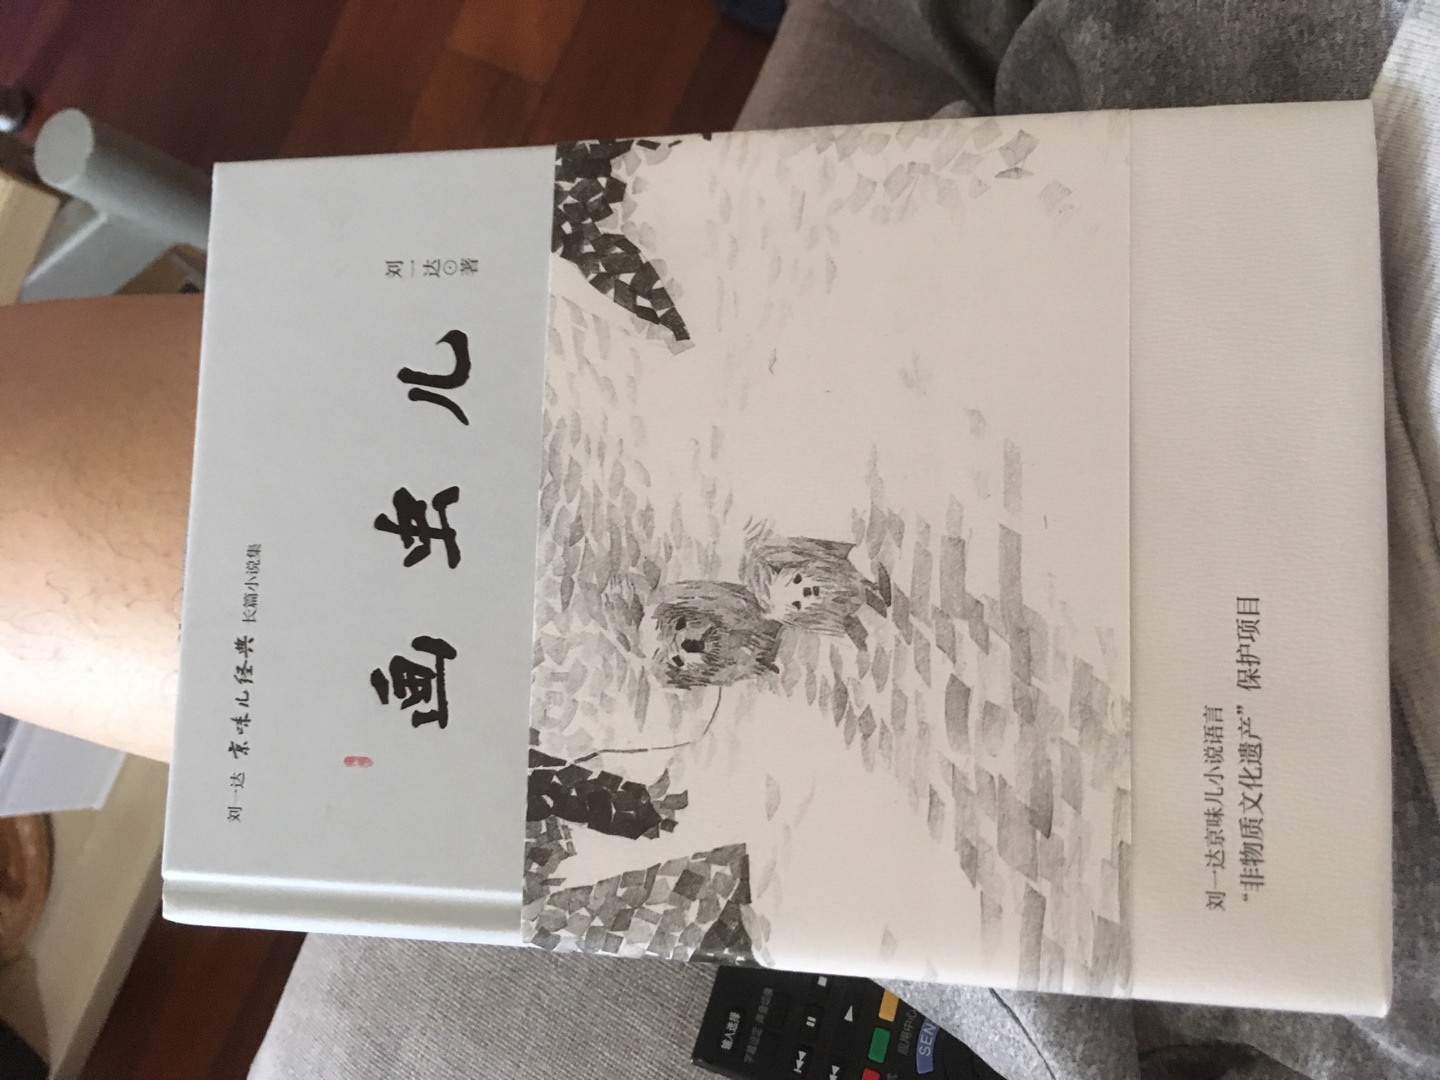 真正有意思的京味文化，刘一达先生的作品实在是太有趣啦，值得一读！